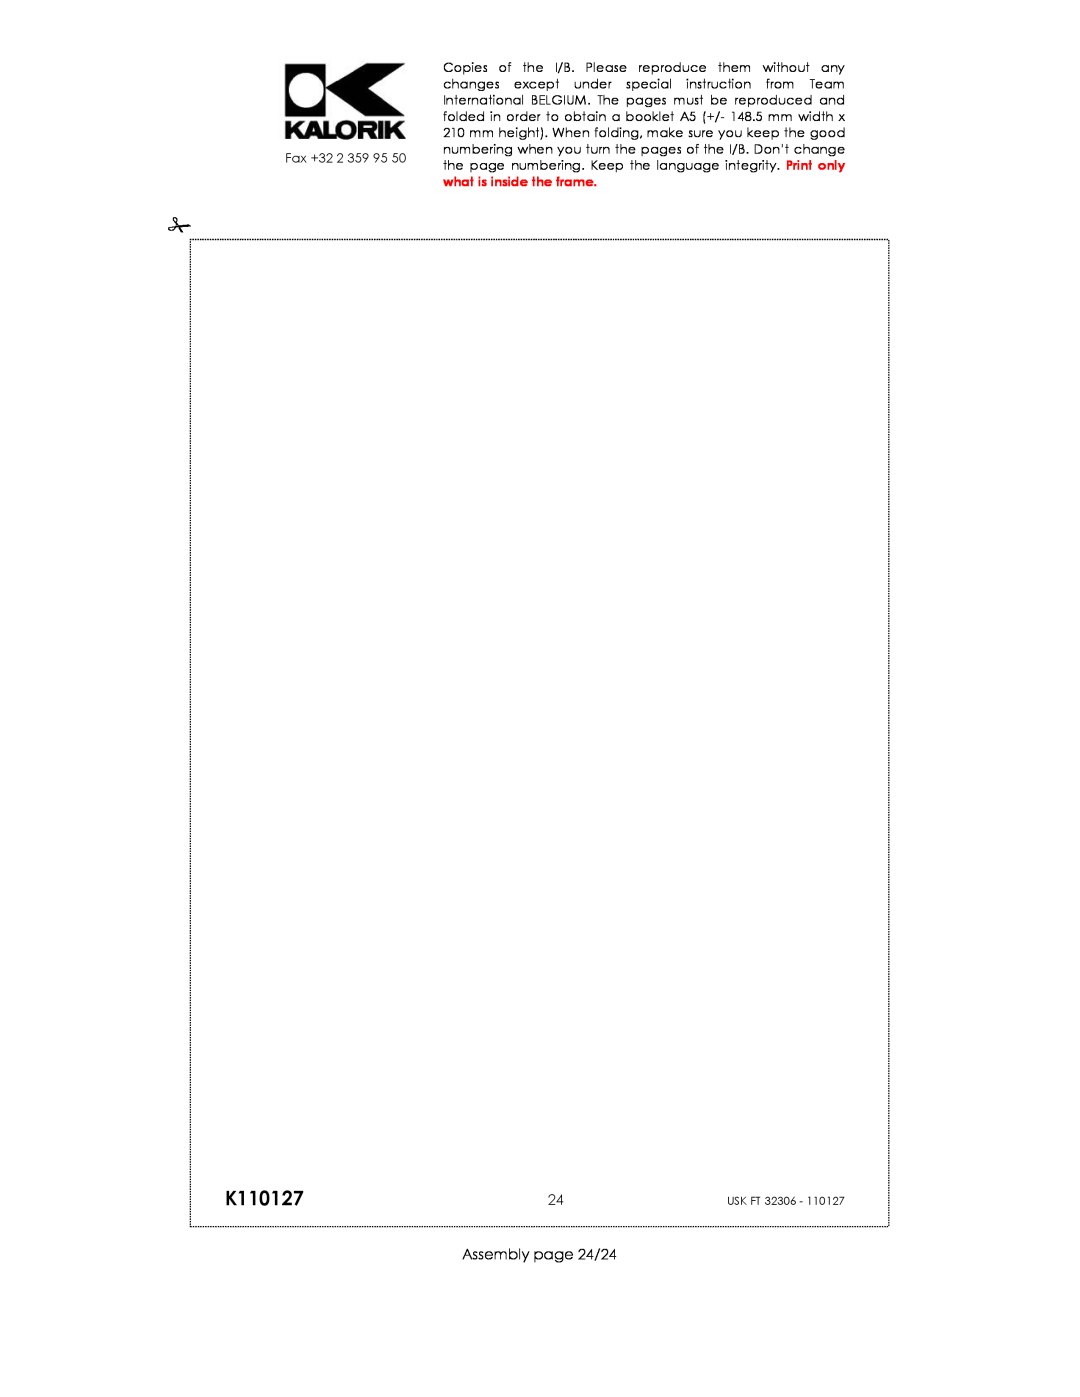 Kalorik USK FT 32306 manual K110127, Assembly page 24/24 